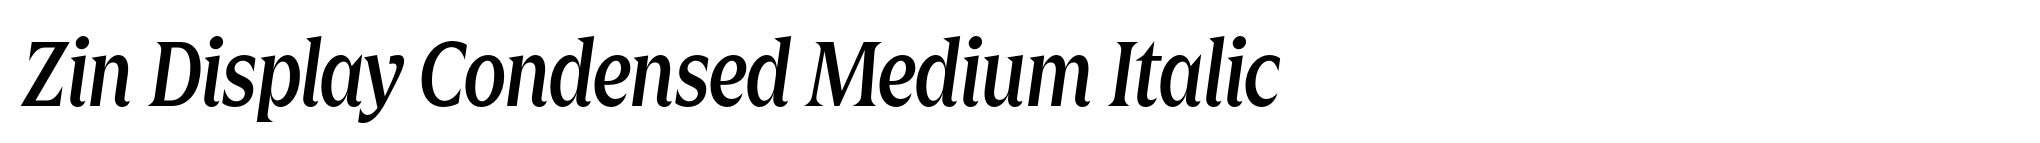 Zin Display Condensed Medium Italic image